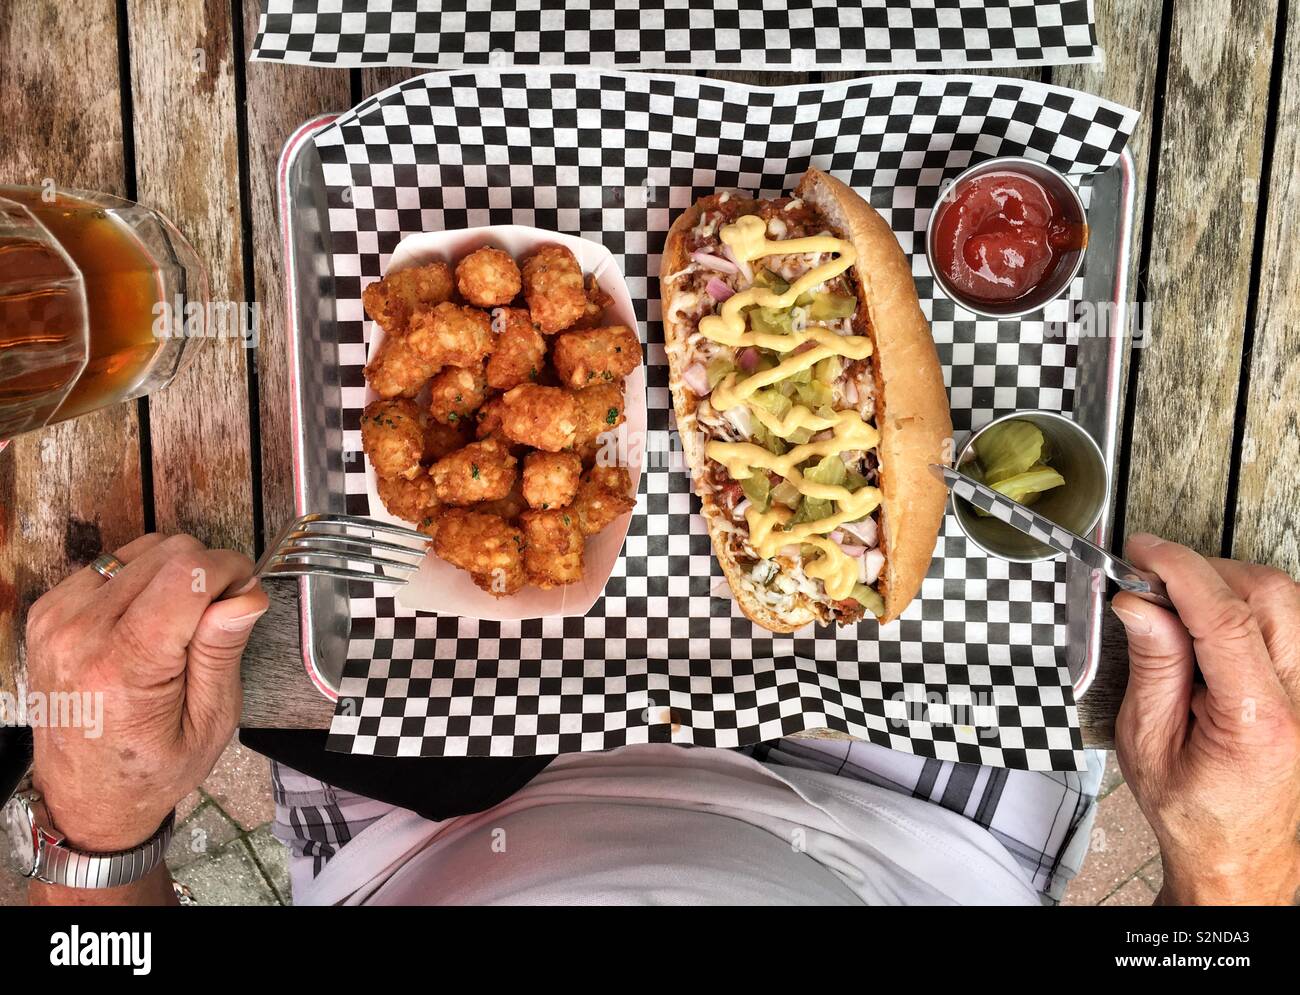 Eine Person mit einer Mahlzeit. Chili hotdog und Tater Tots. Stockfoto